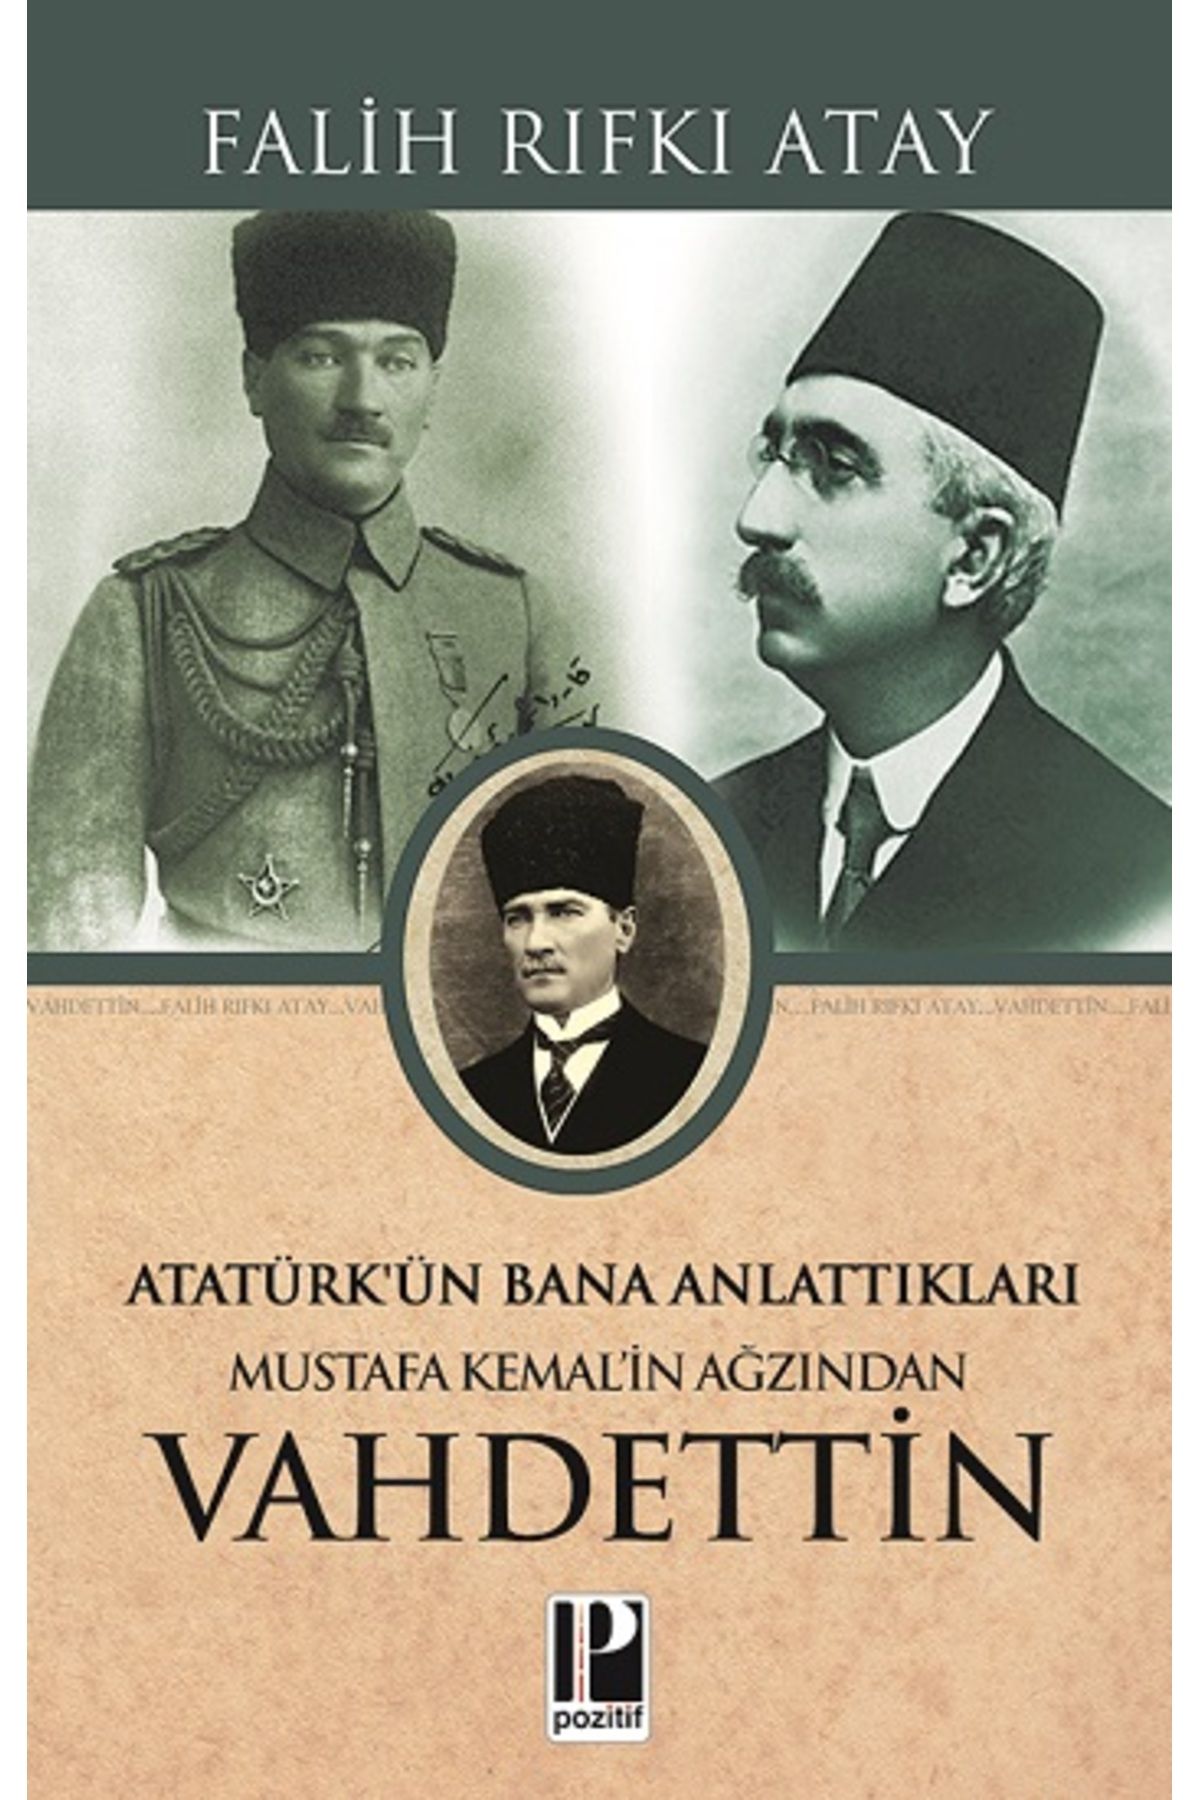 Pozitif Yayınları Atatürk’ün Bana Anlattıkları Mustafa Kemal’in Ağzından Vahdettin